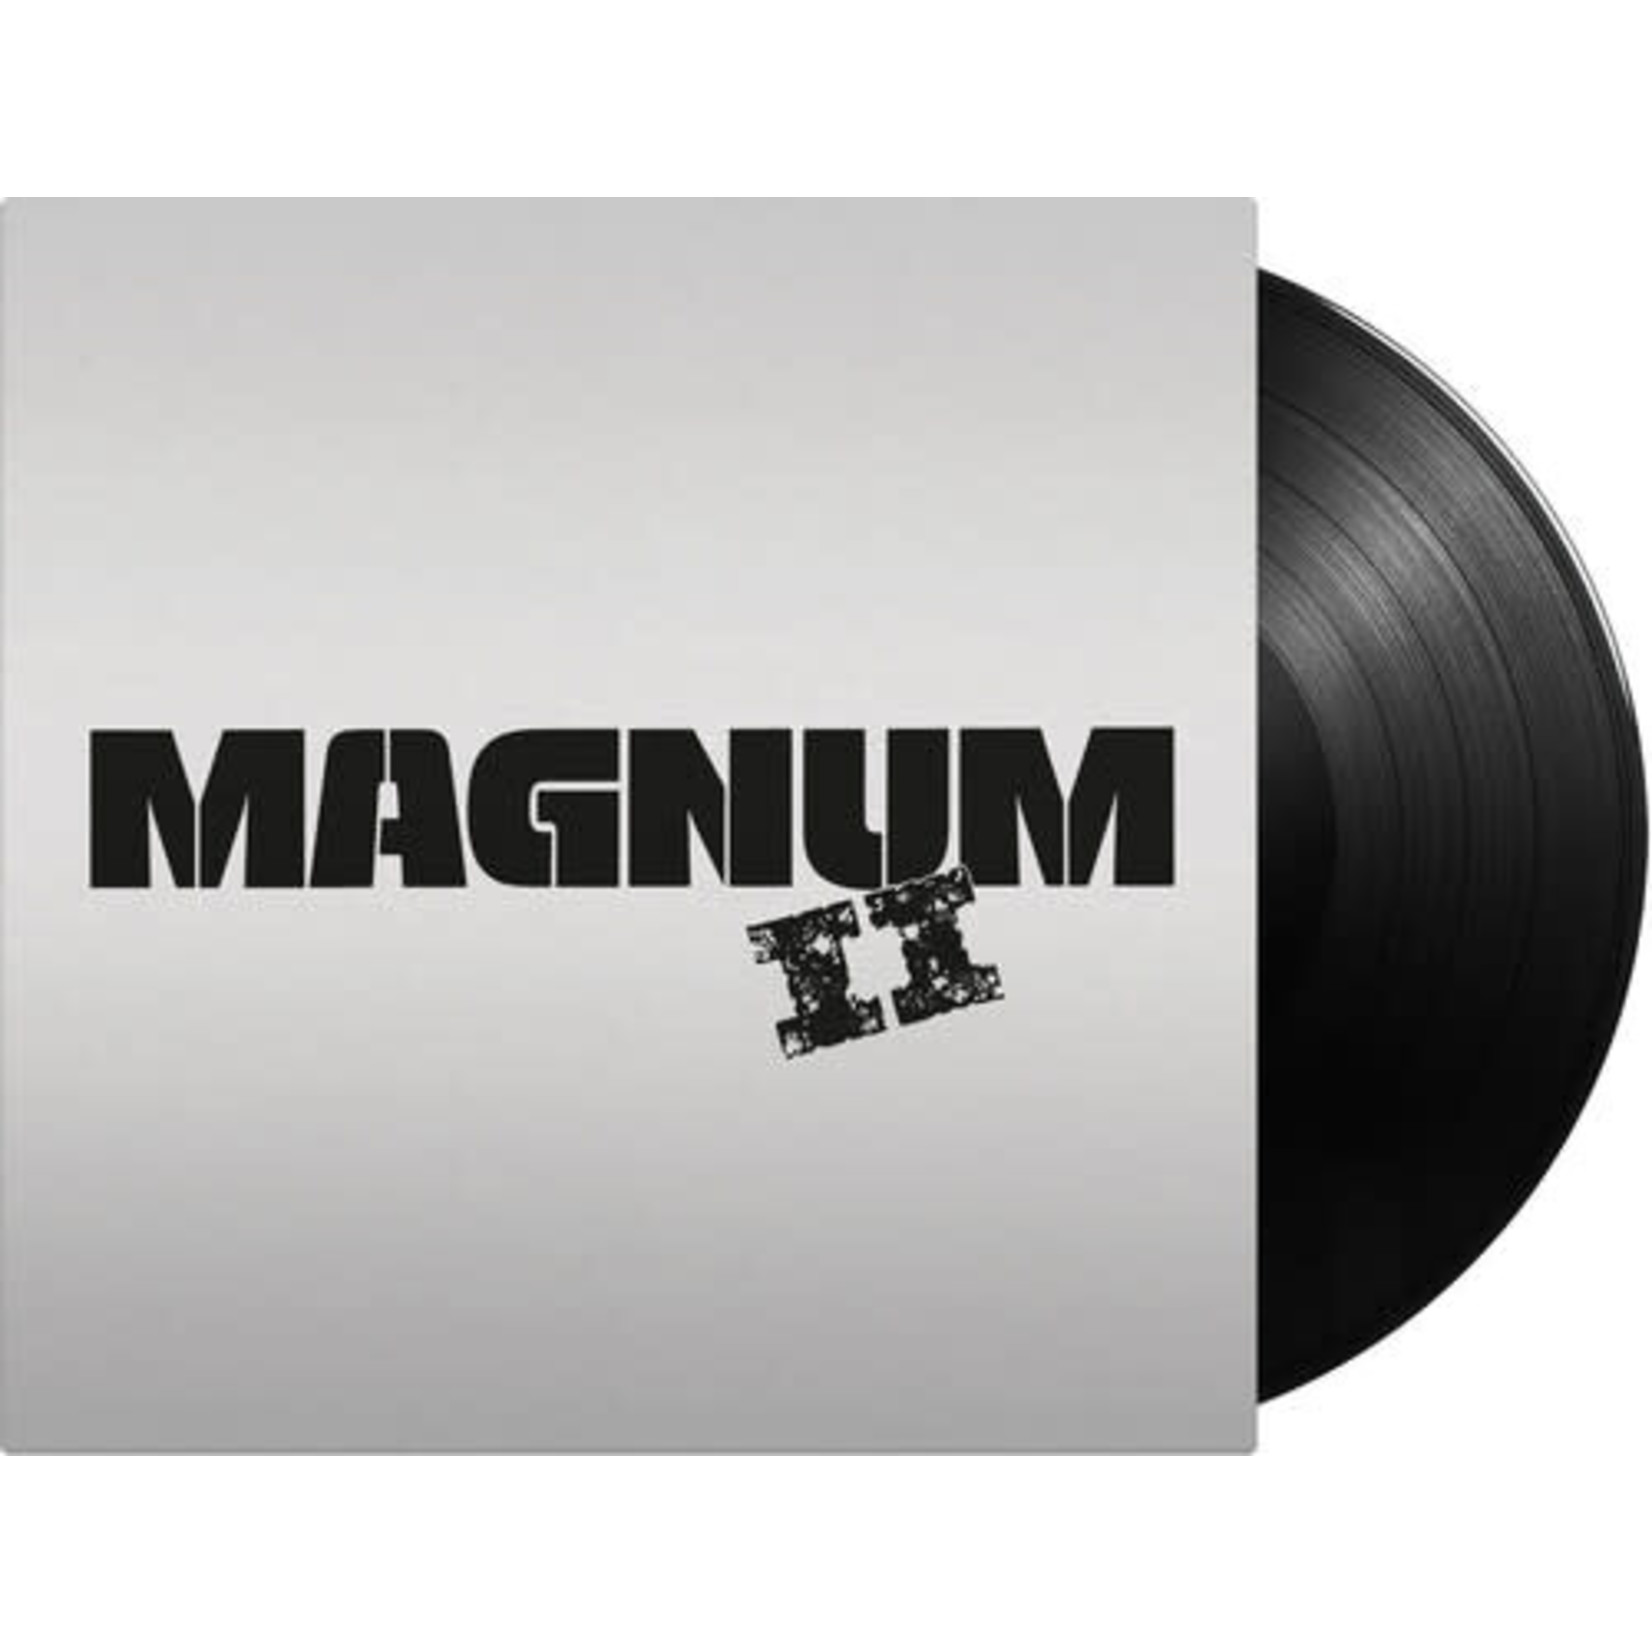 Vinyl - Magnum (LP) - Culture Clash